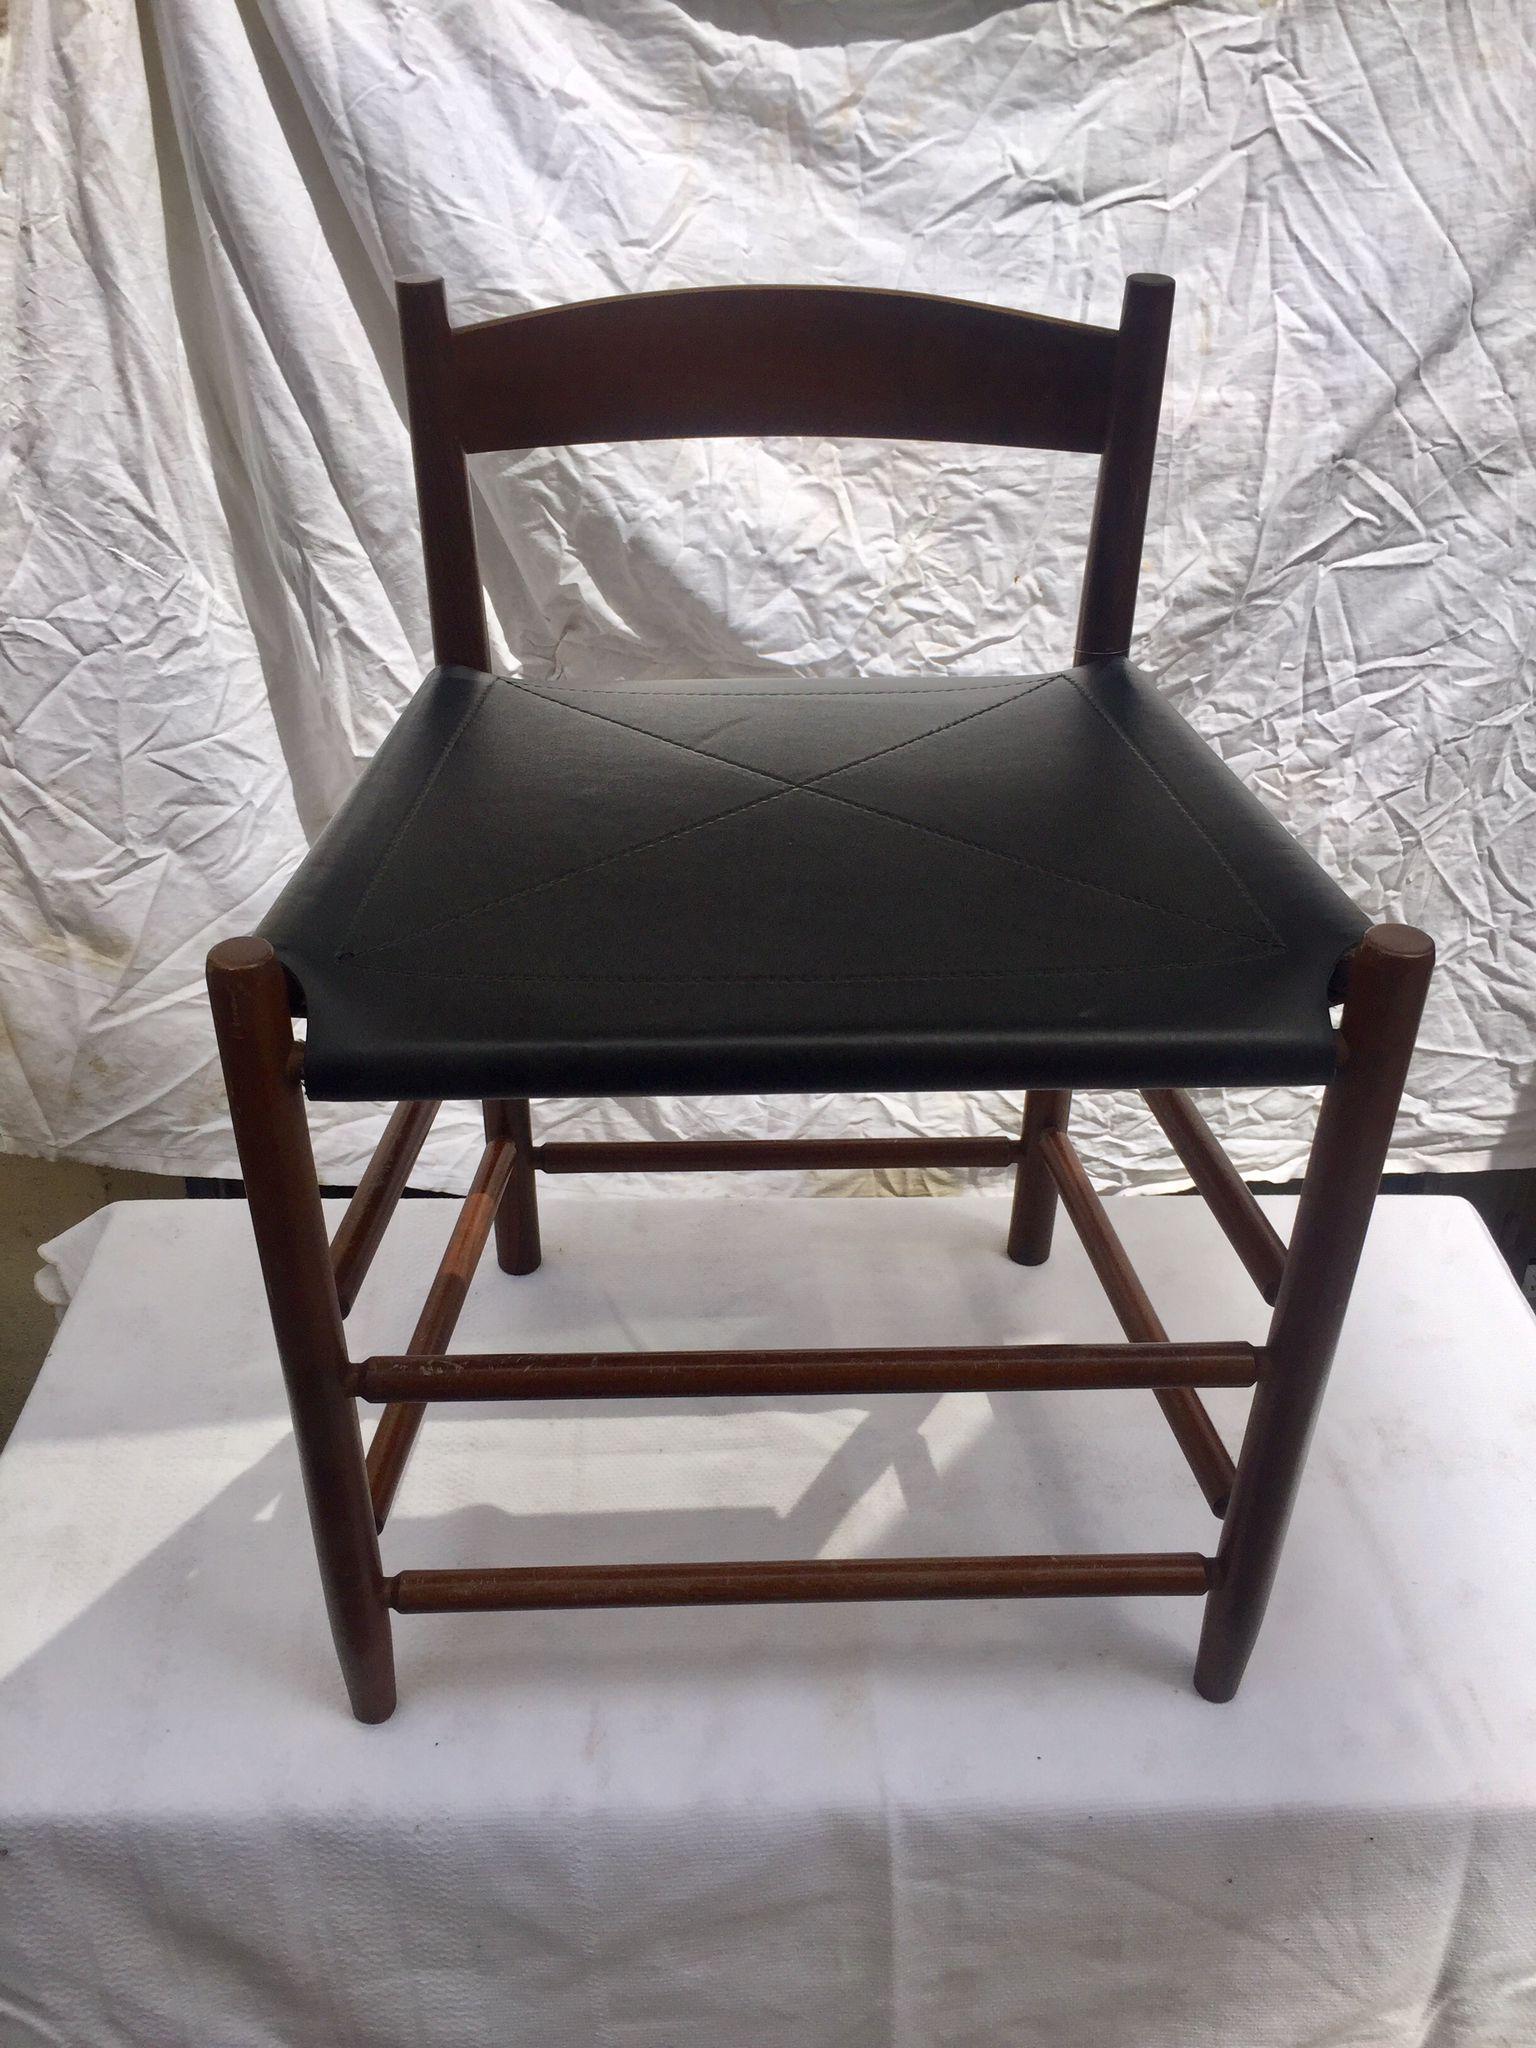 Cette élégante chaise de salle à manger a été conçue par Gianfranco Frattini et produite par Bernini. Pour son design excentrique, le Bernin s'est inspiré du style des années 1950. Notez les lignes fluides du dossier en bois qui se fondent